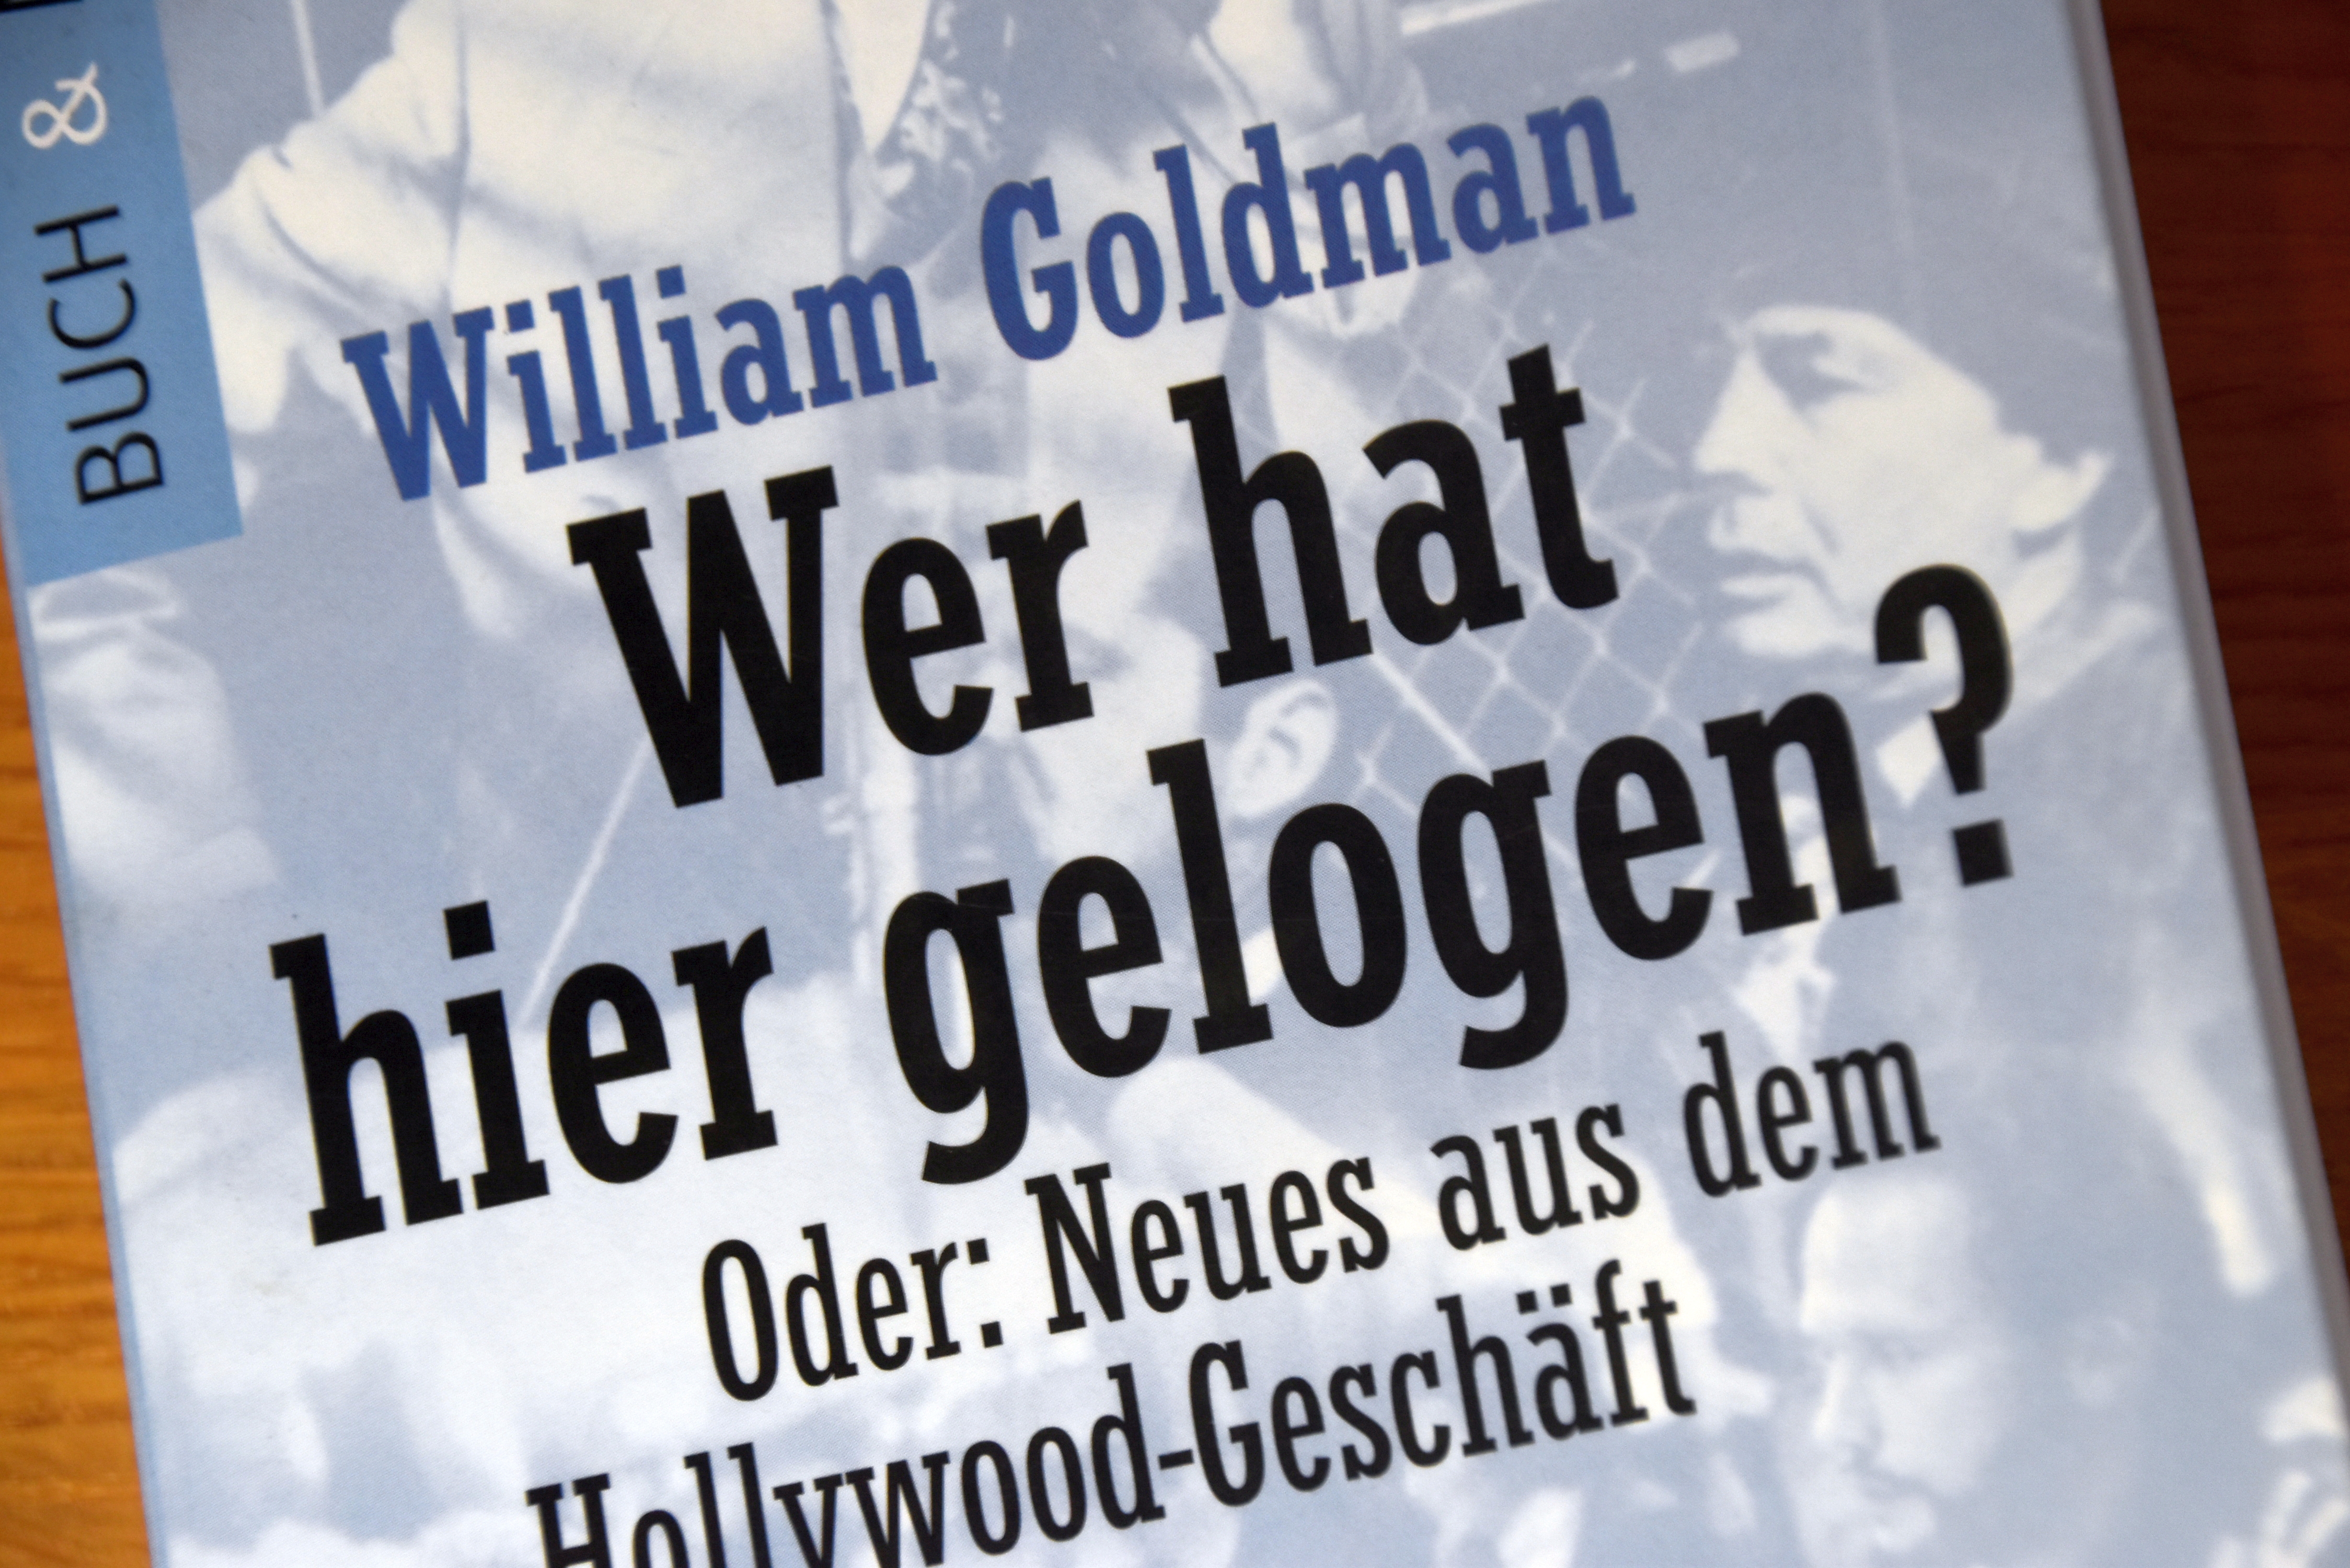 William Goldman: Wer hat hier gelogen?